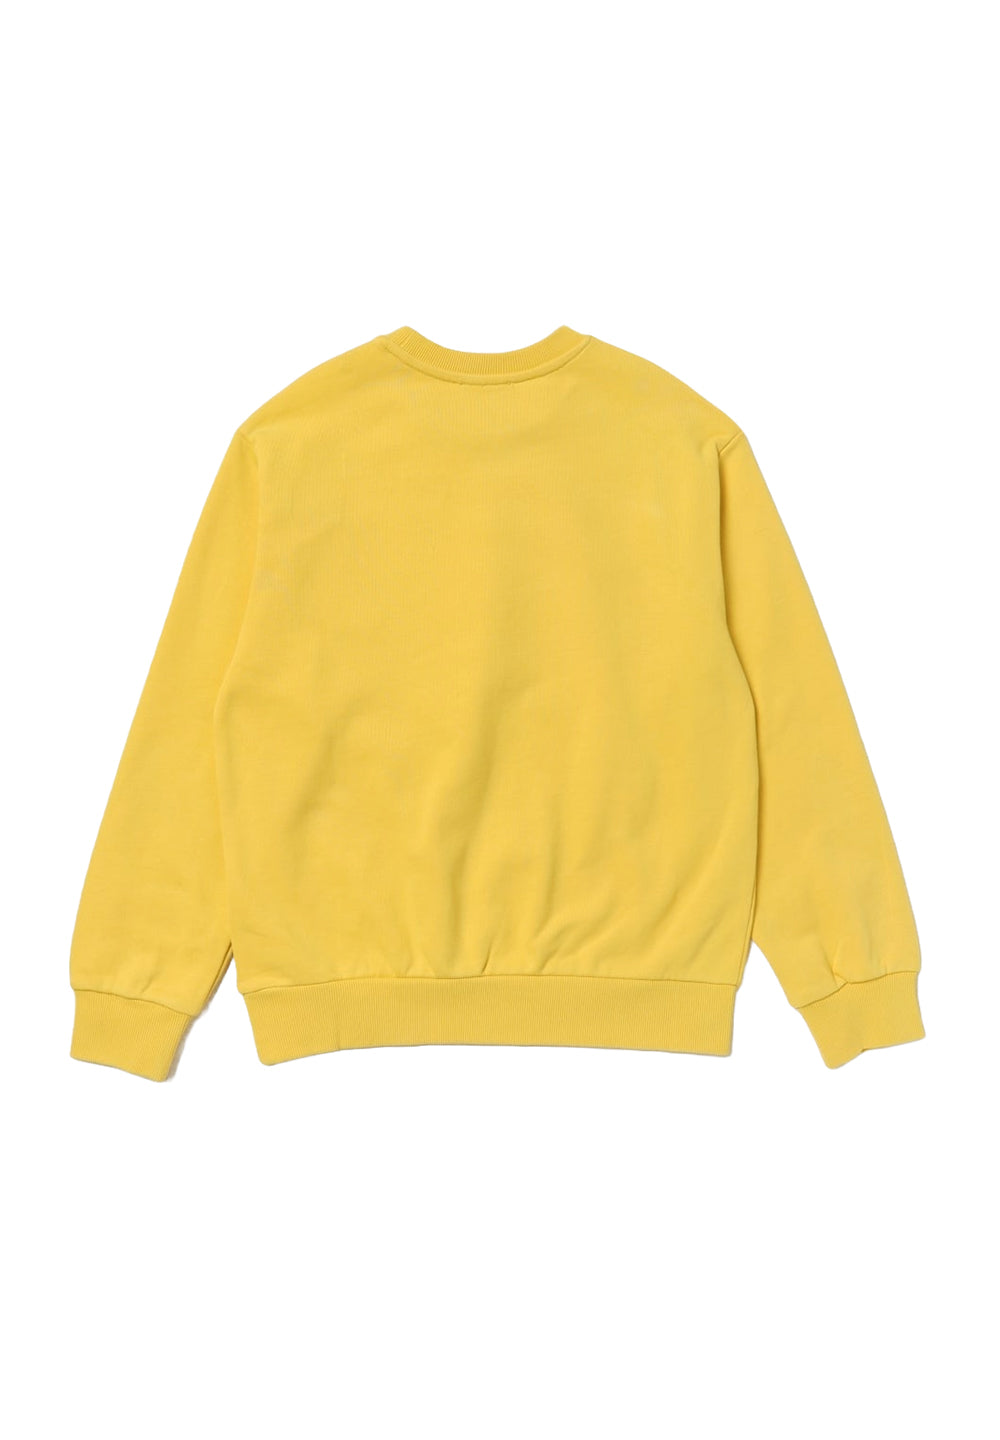 Yellow crewneck sweatshirt for boys